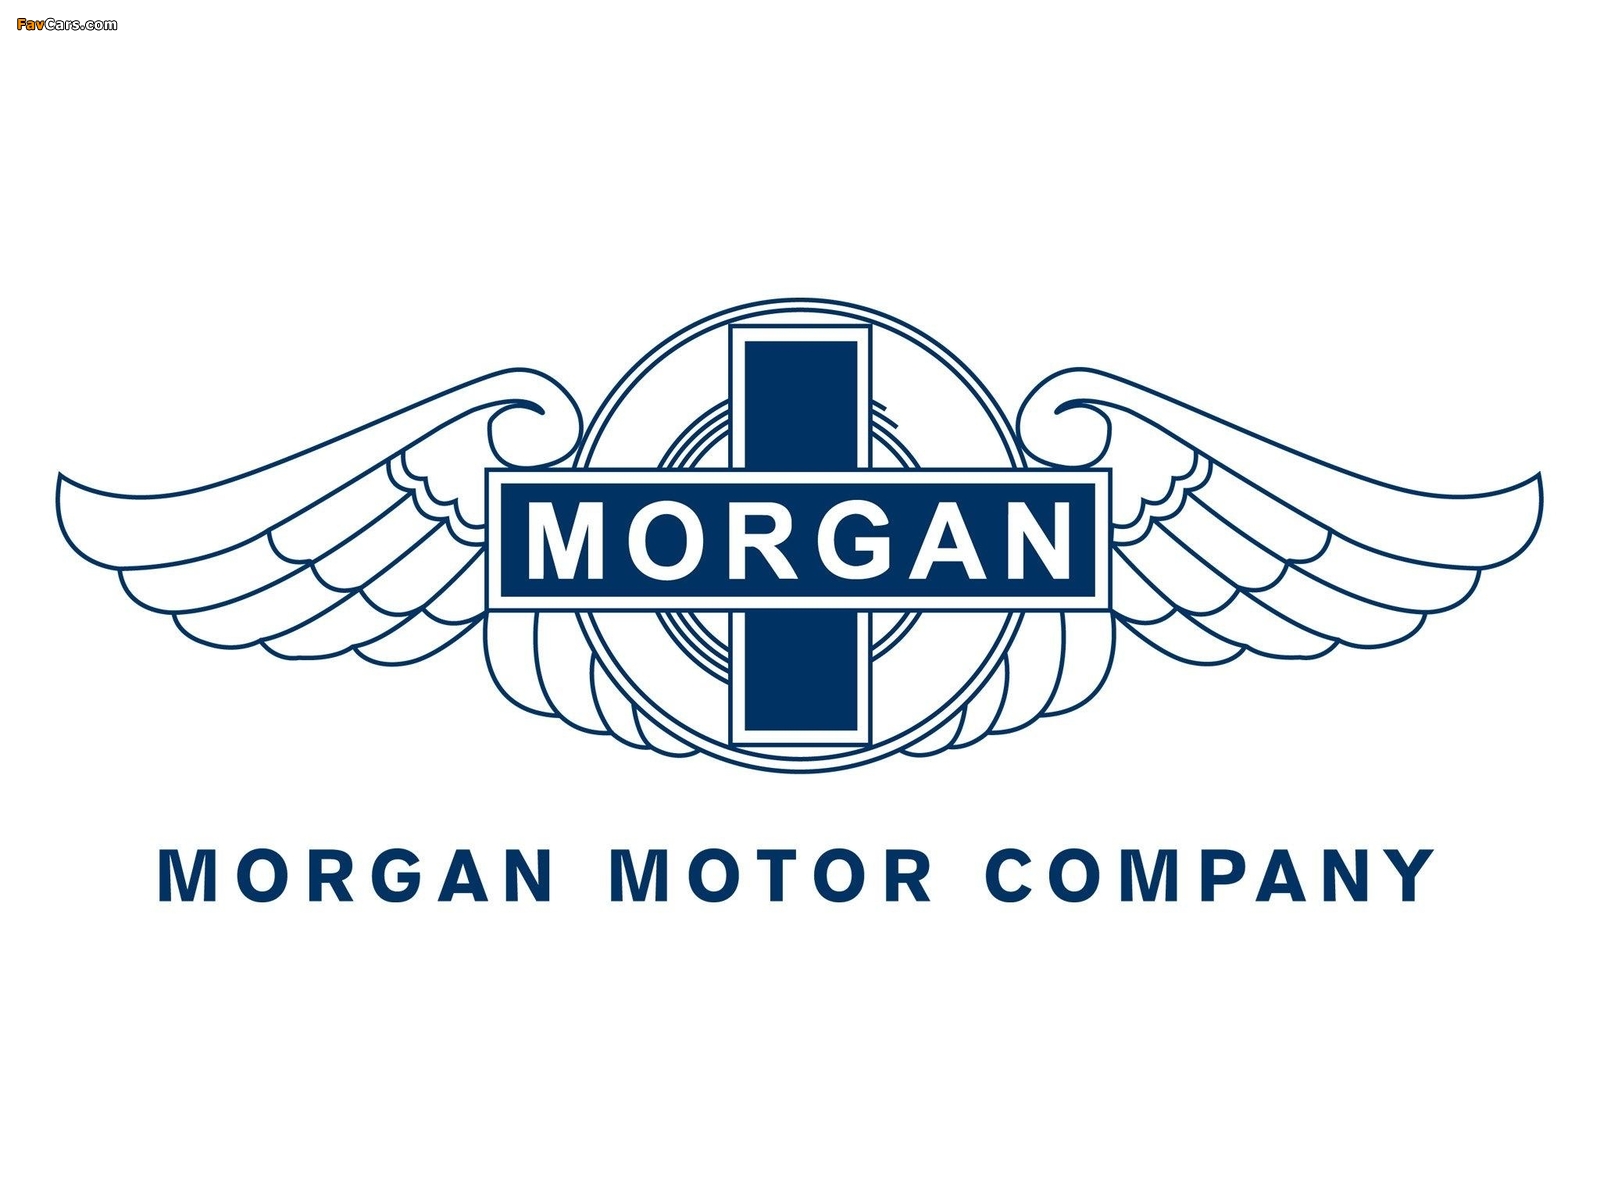 Morgan images (1600 x 1200)